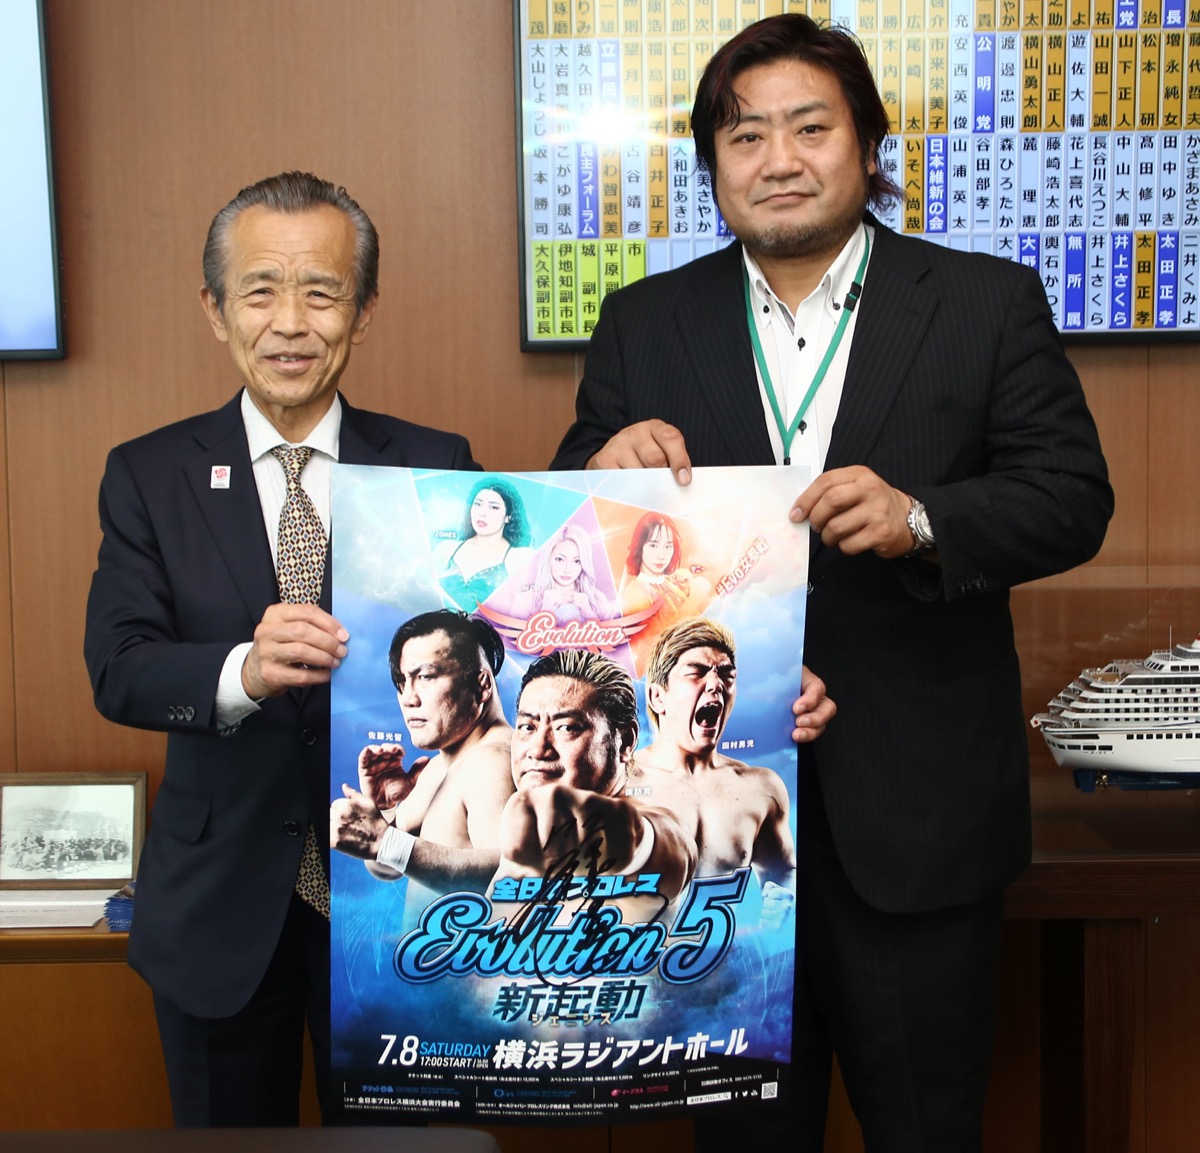 全日本プロレス・諏訪魔選手が横浜市会の清水富雄議長を表敬訪問